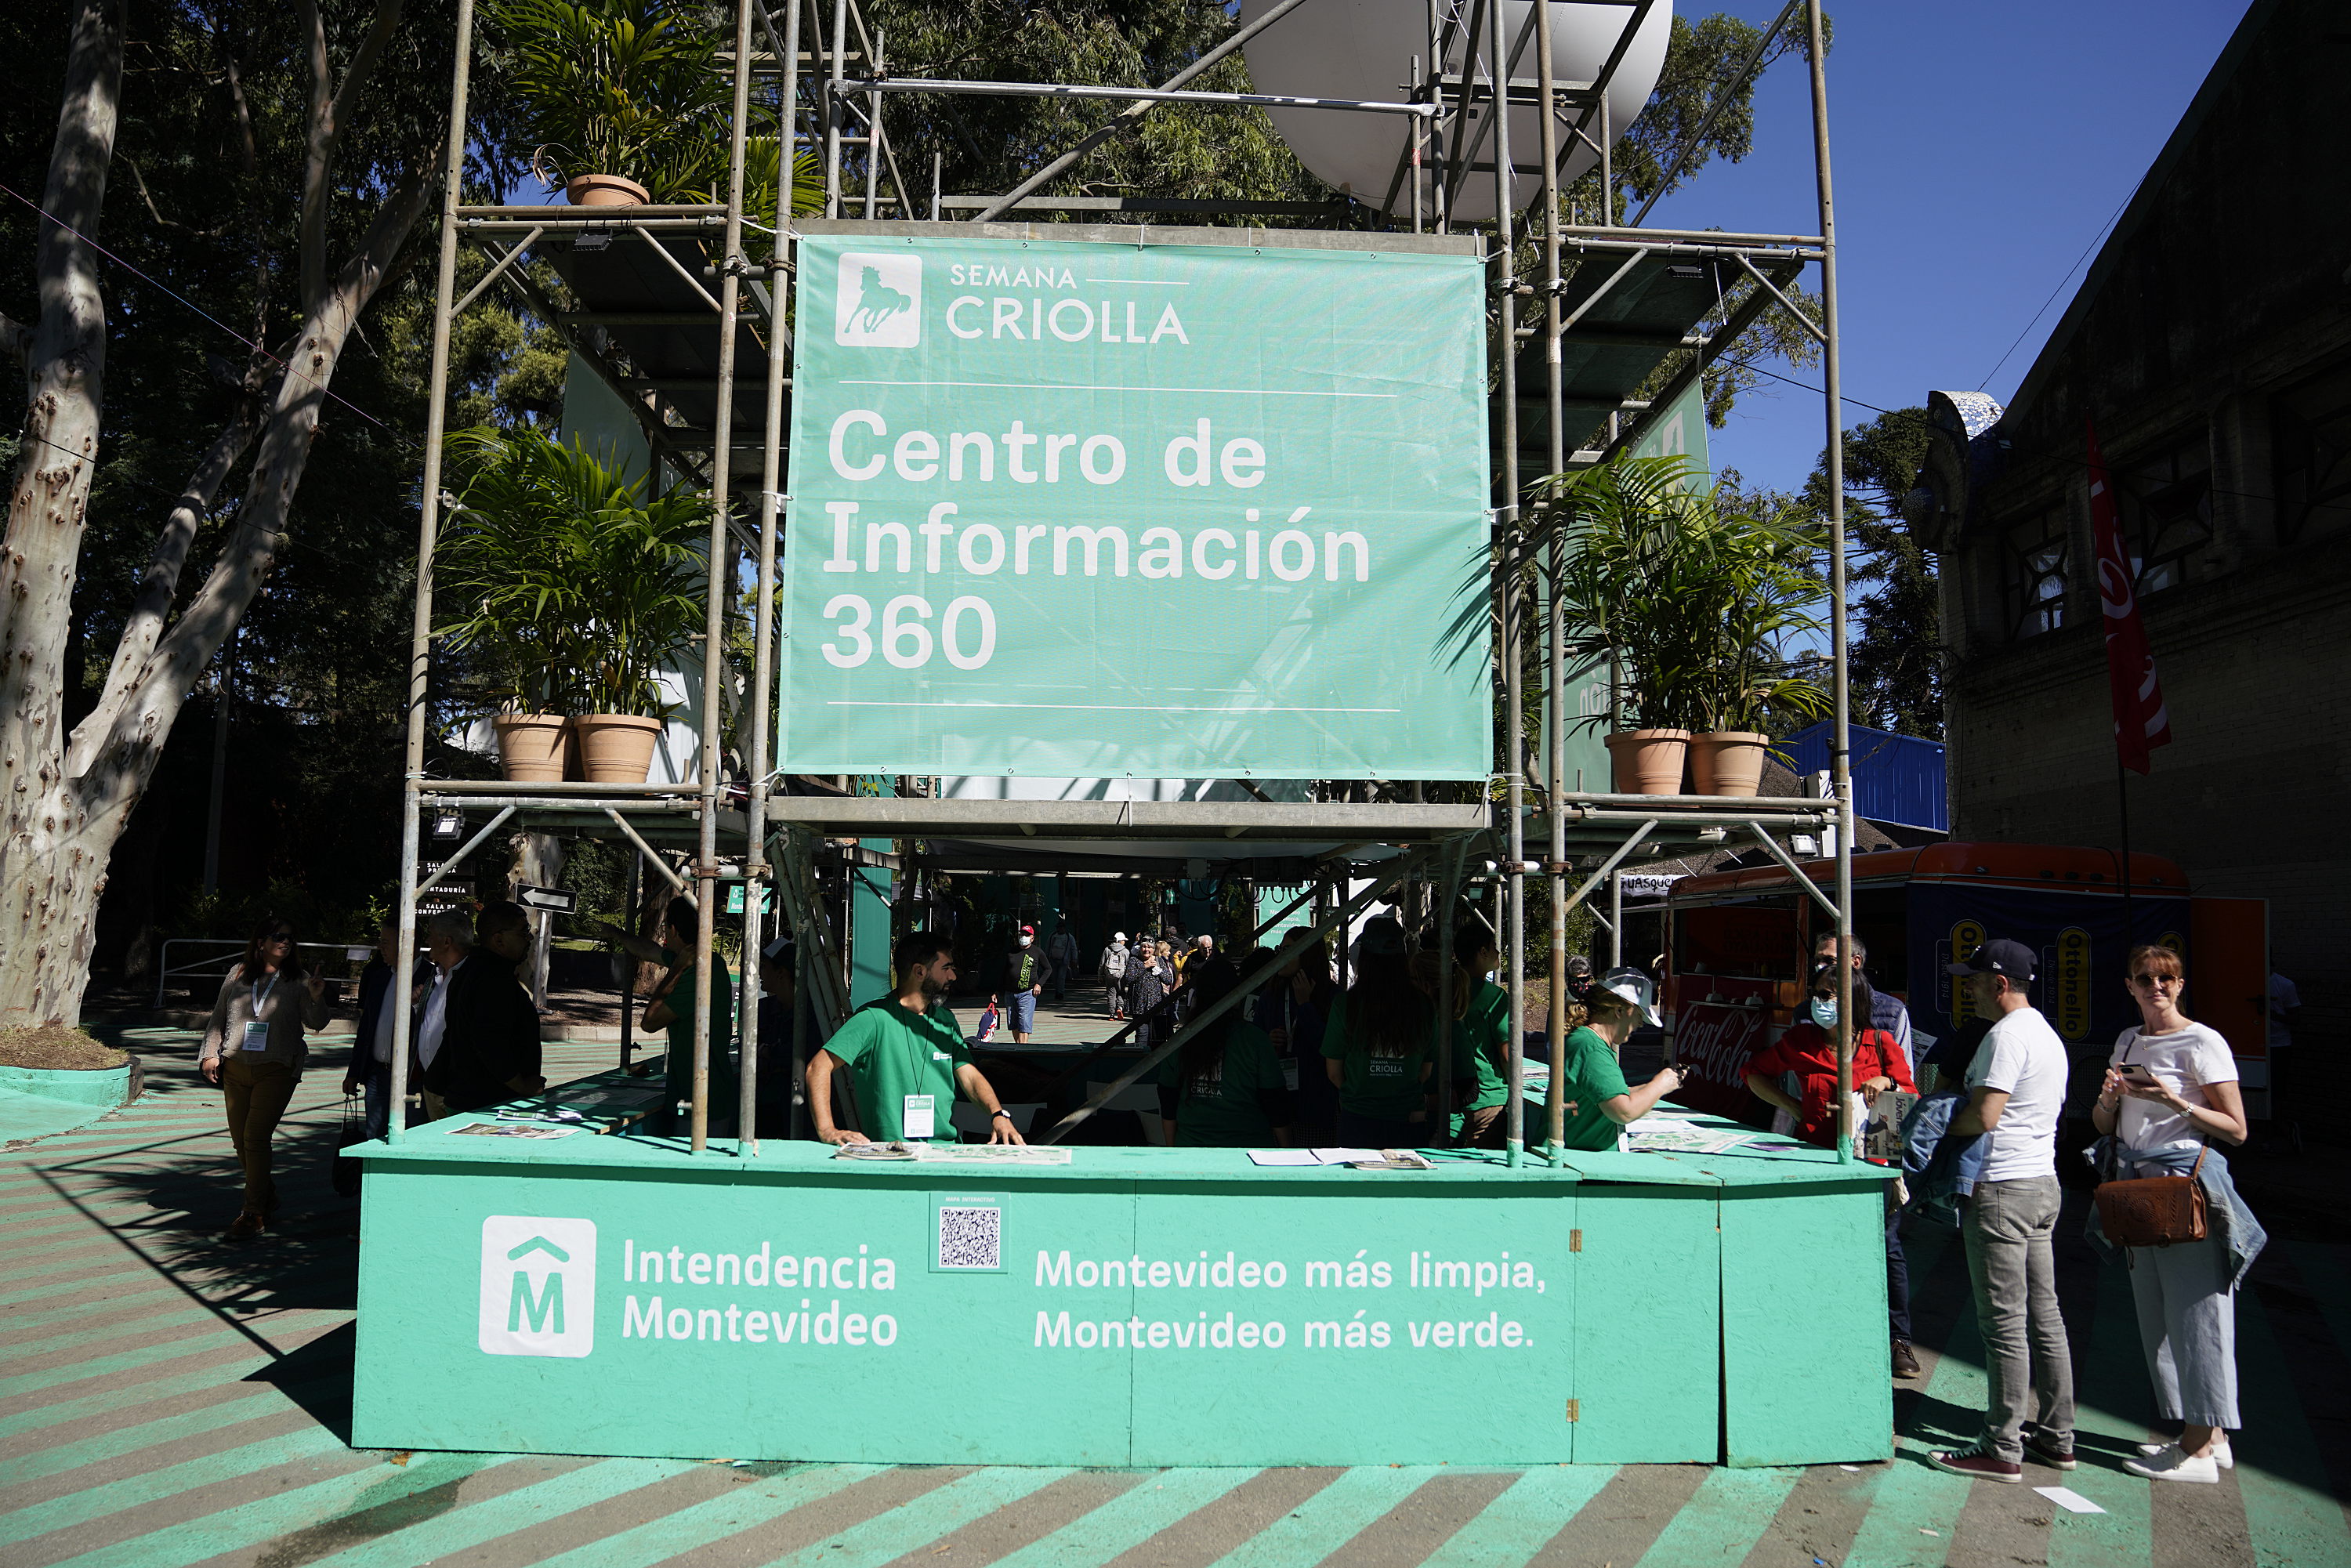 Centro de Información 360, Semana Criolla 2022